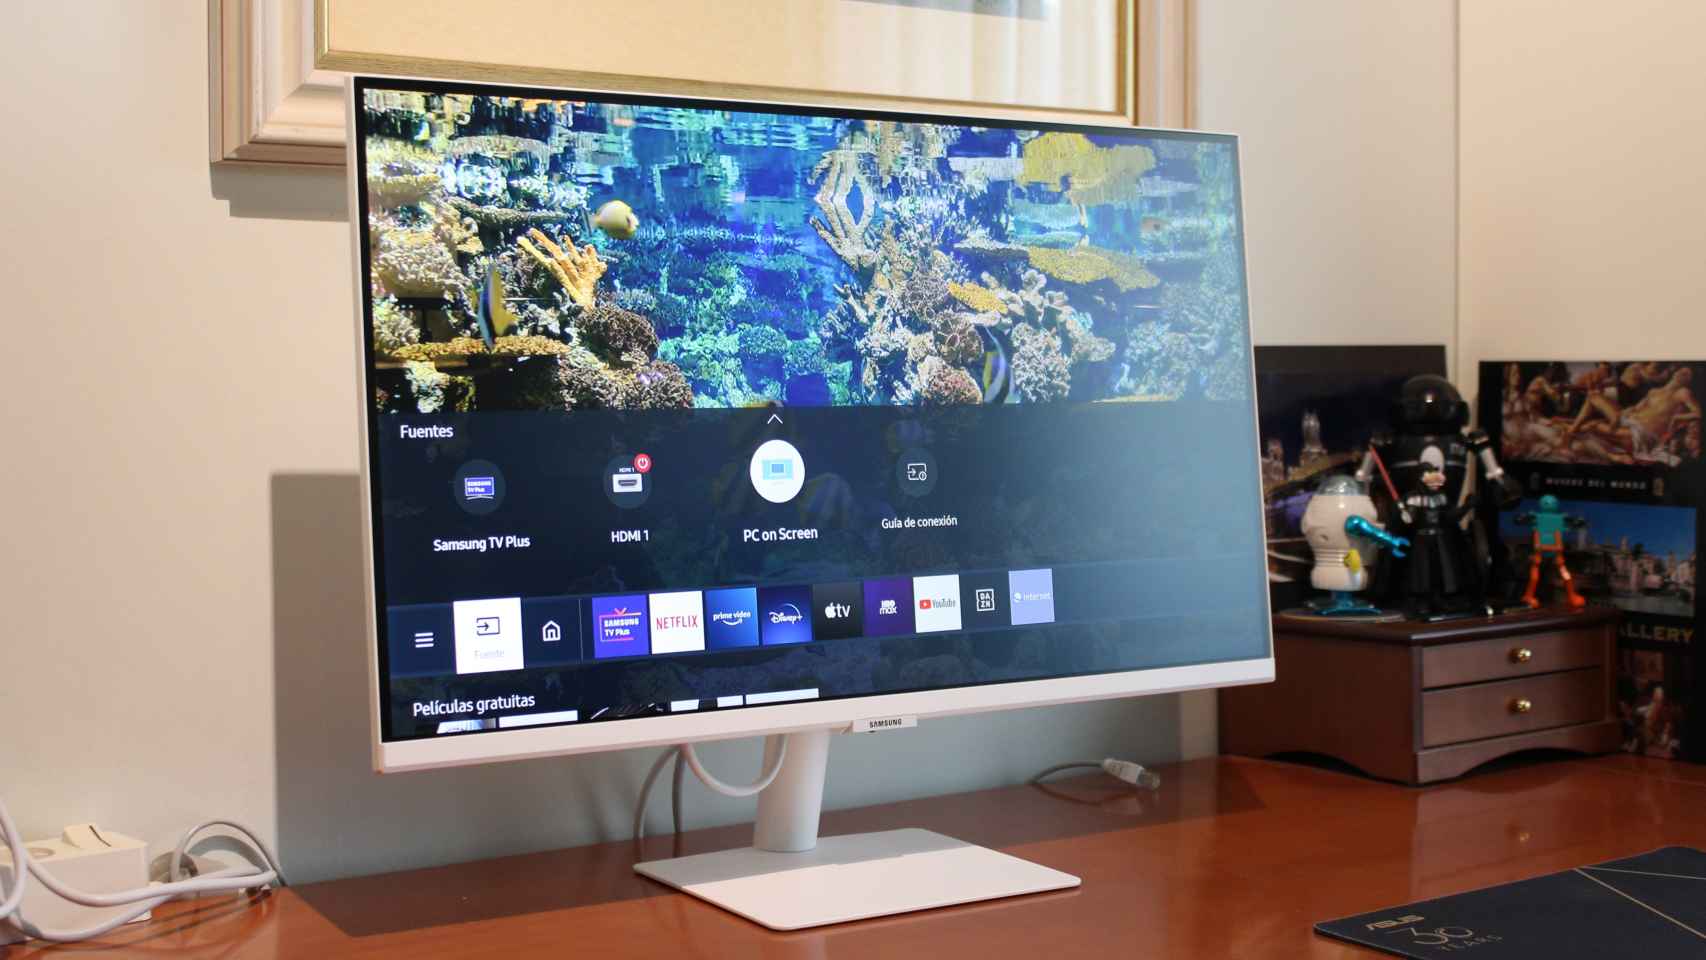 He probado el monitor de Samsung que también es Smart TV: ojalá haberlo  tenido en cuarentena